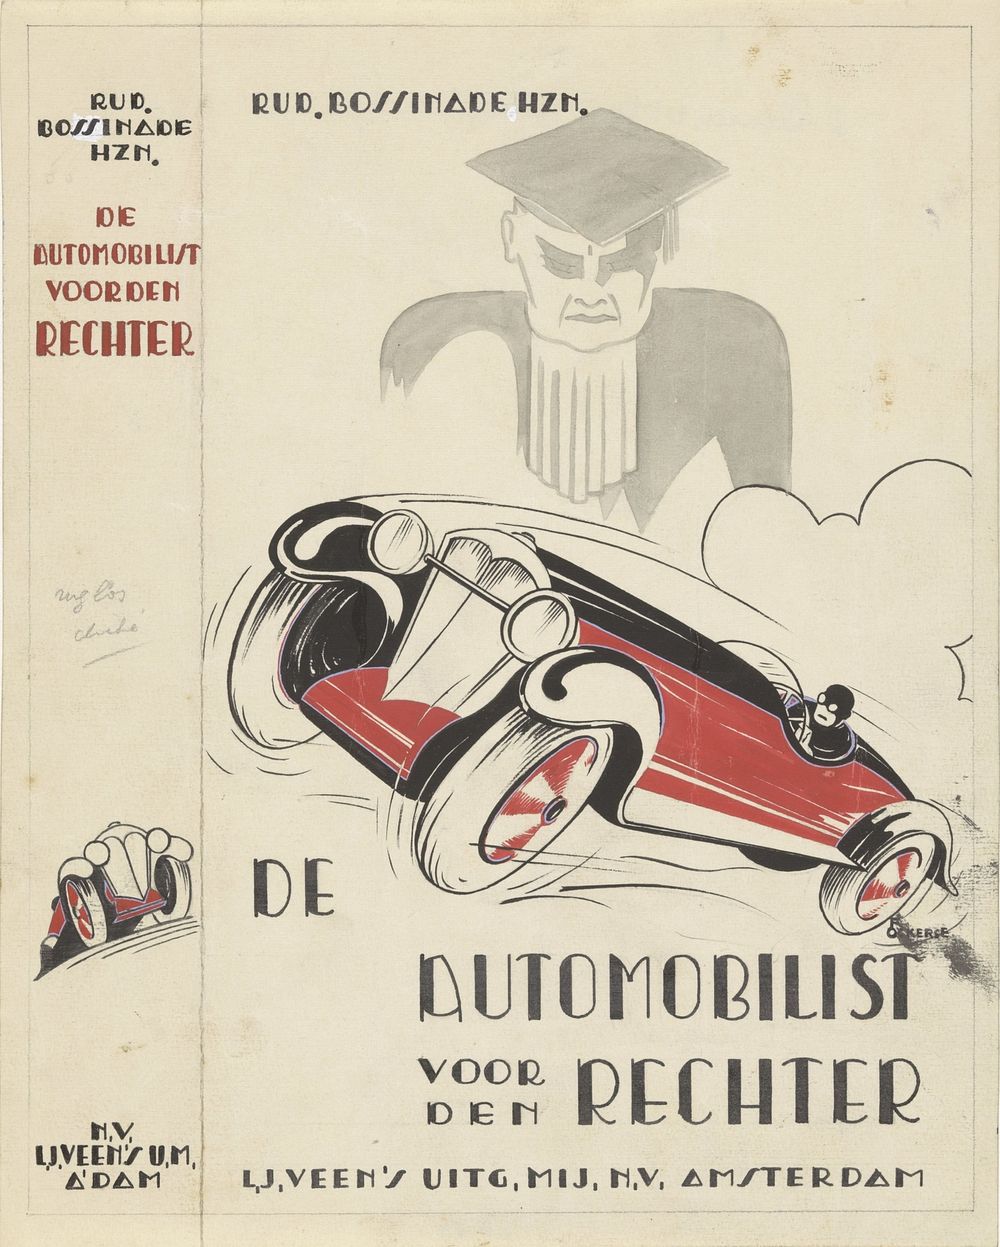 Bandontwerp voor: Rudolf Bossinade, De automobilist voor den rechter: Automobilistenrecht, c. 1932-1934 (c. 1932 - c. 1934)…